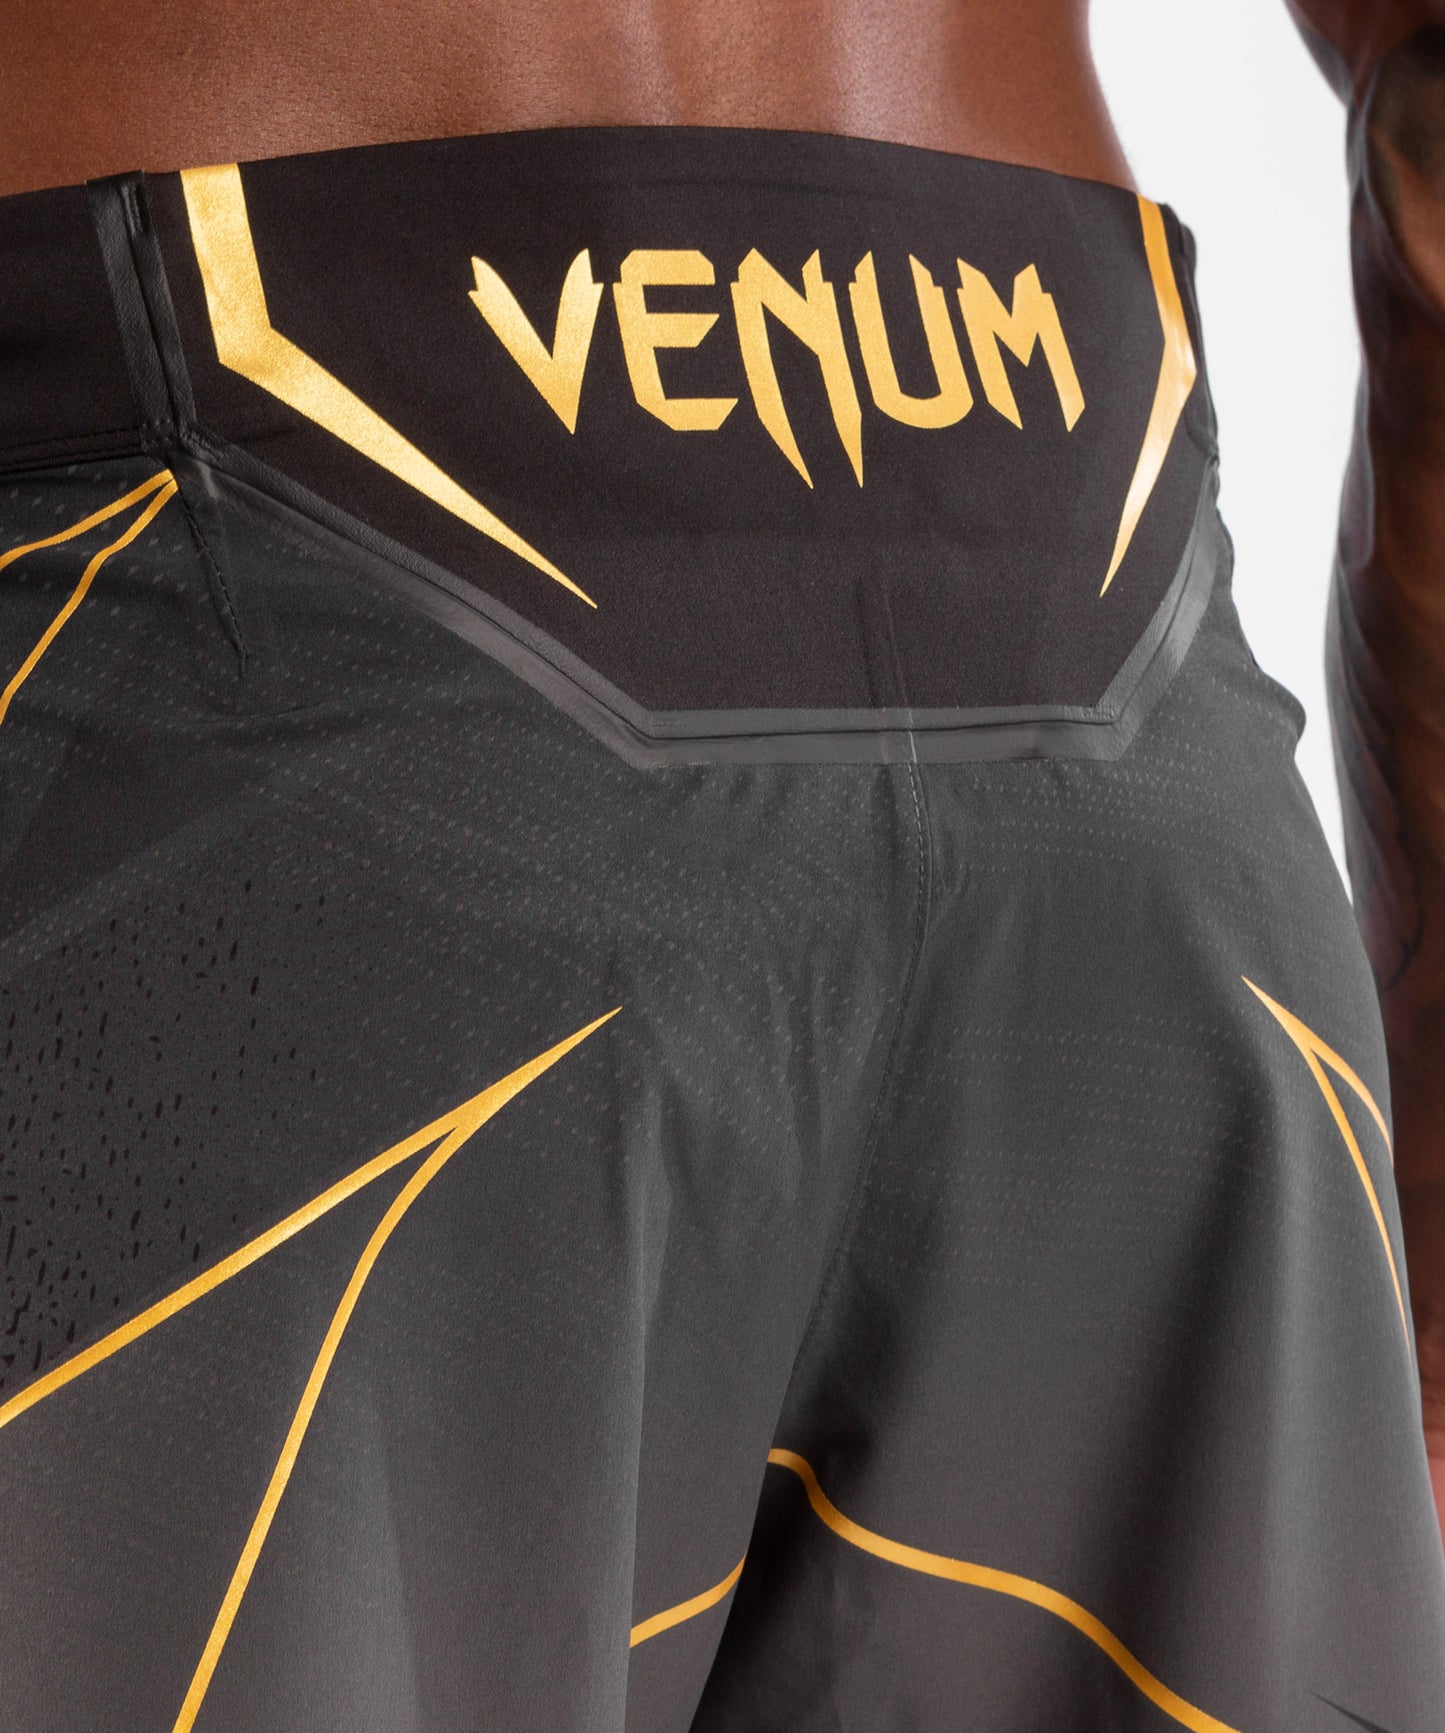 Venum X UFC Authentique Combat Nuit Hommes Gladiateur Mma Short Champion  Sport